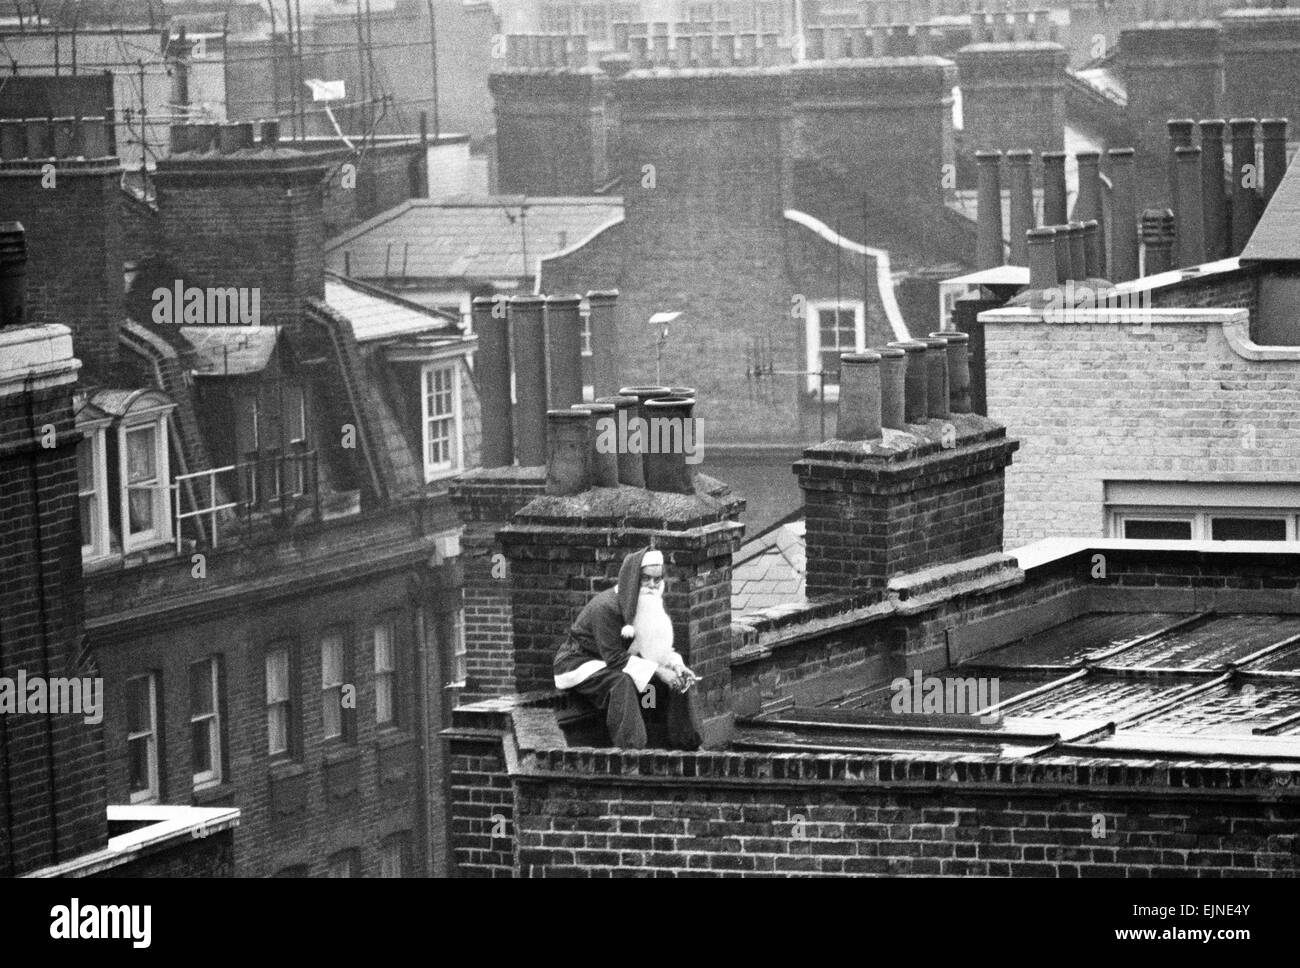 Papá Noel tiene tiempo de su apretada agenda para una rápida escapada de cigarrillos en el techo de una concurrida tienda de West End de Londres. El 23 de diciembre de 1970. Foto de stock